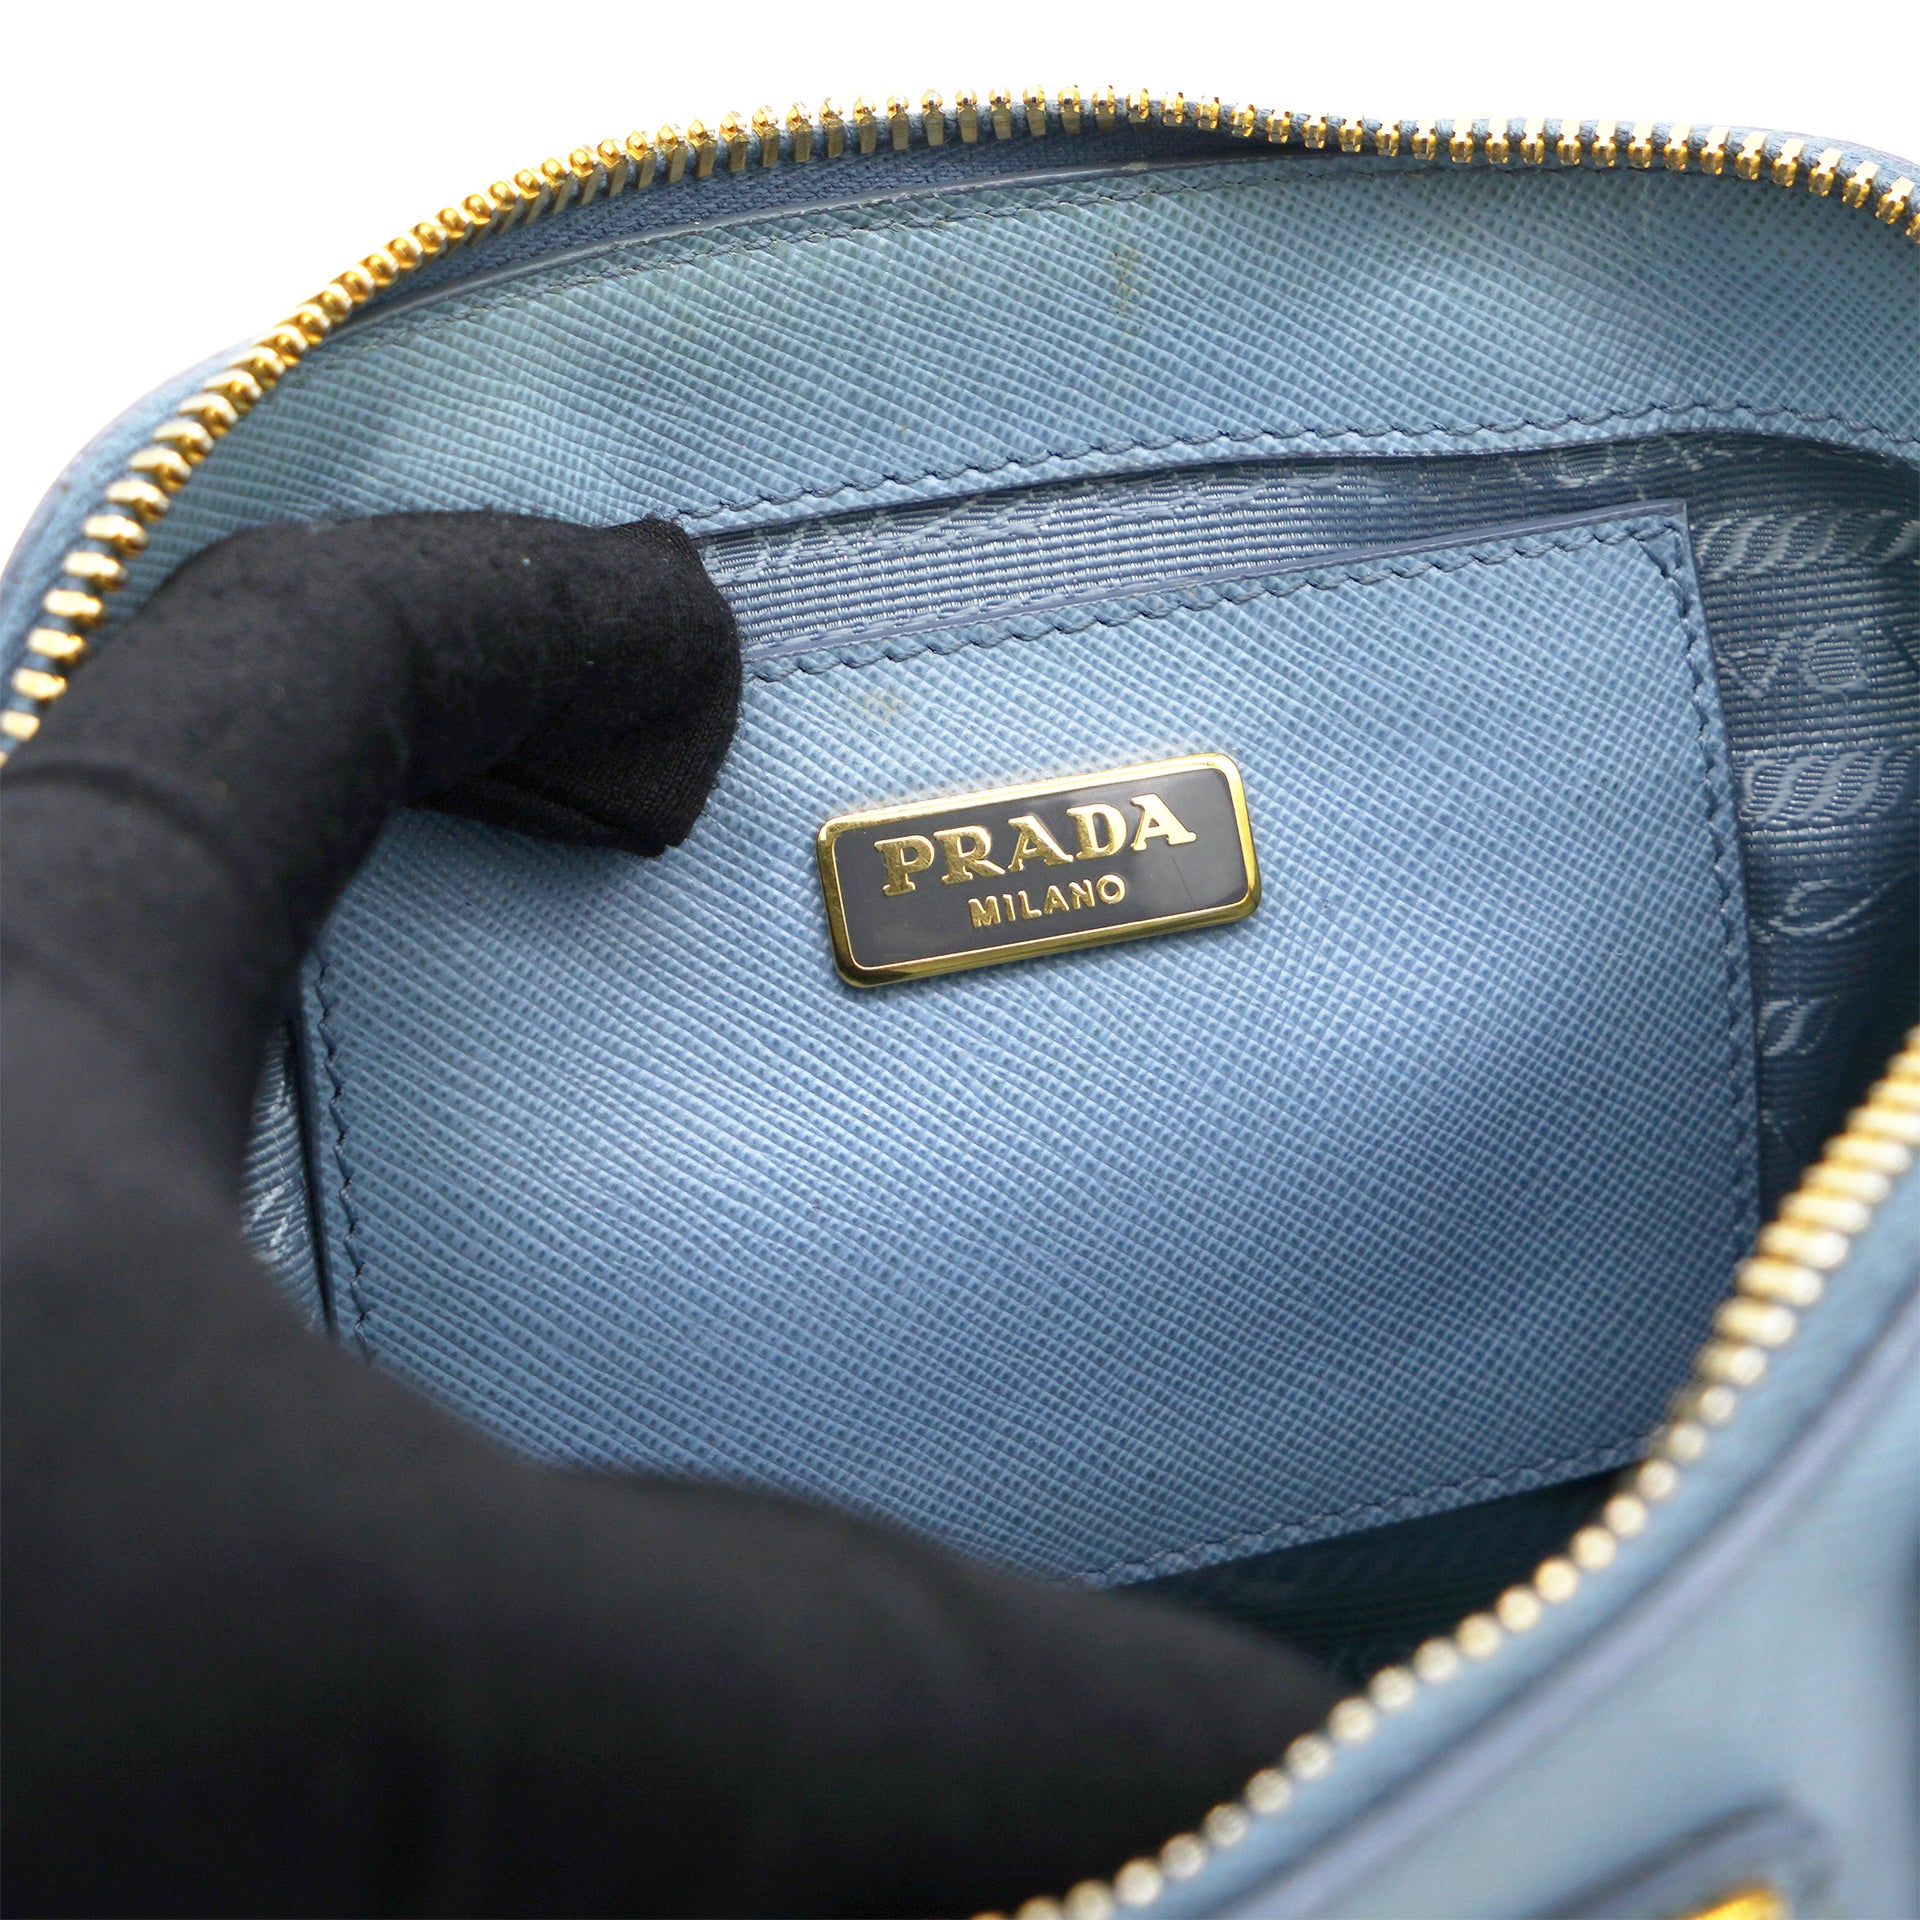 PRADA Saffiano Lux Leather Small Promenade Bag - The Luxury Pop